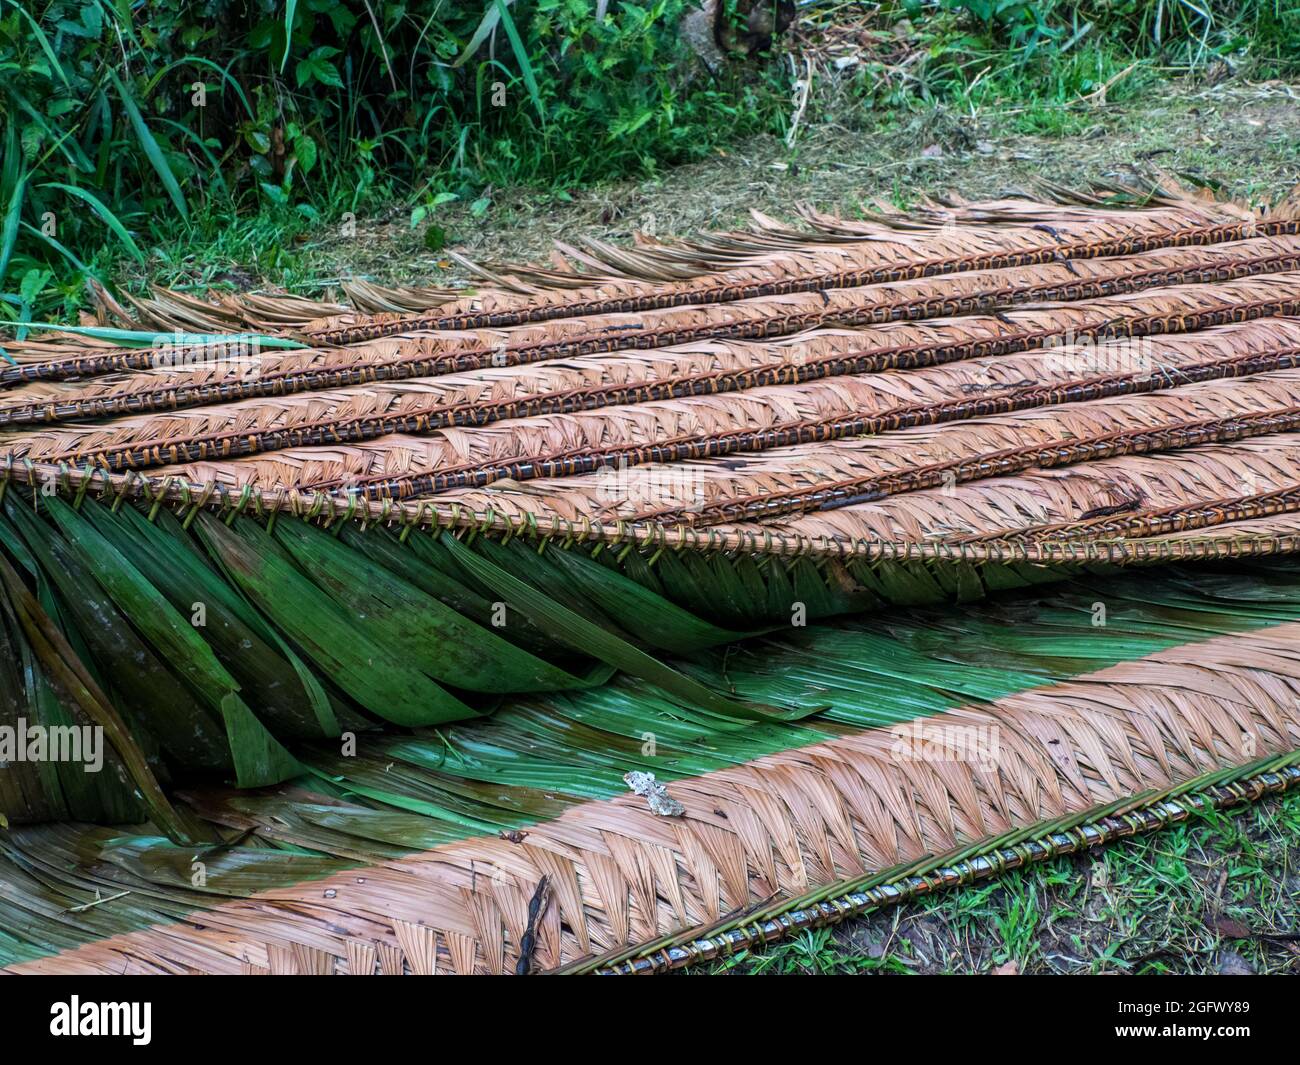 Dach aus einem Palmenblatt, um Holzhäuser im Amazonaswald zu bedecken. Amazonien, Brasilien, Südamerika. Stockfoto